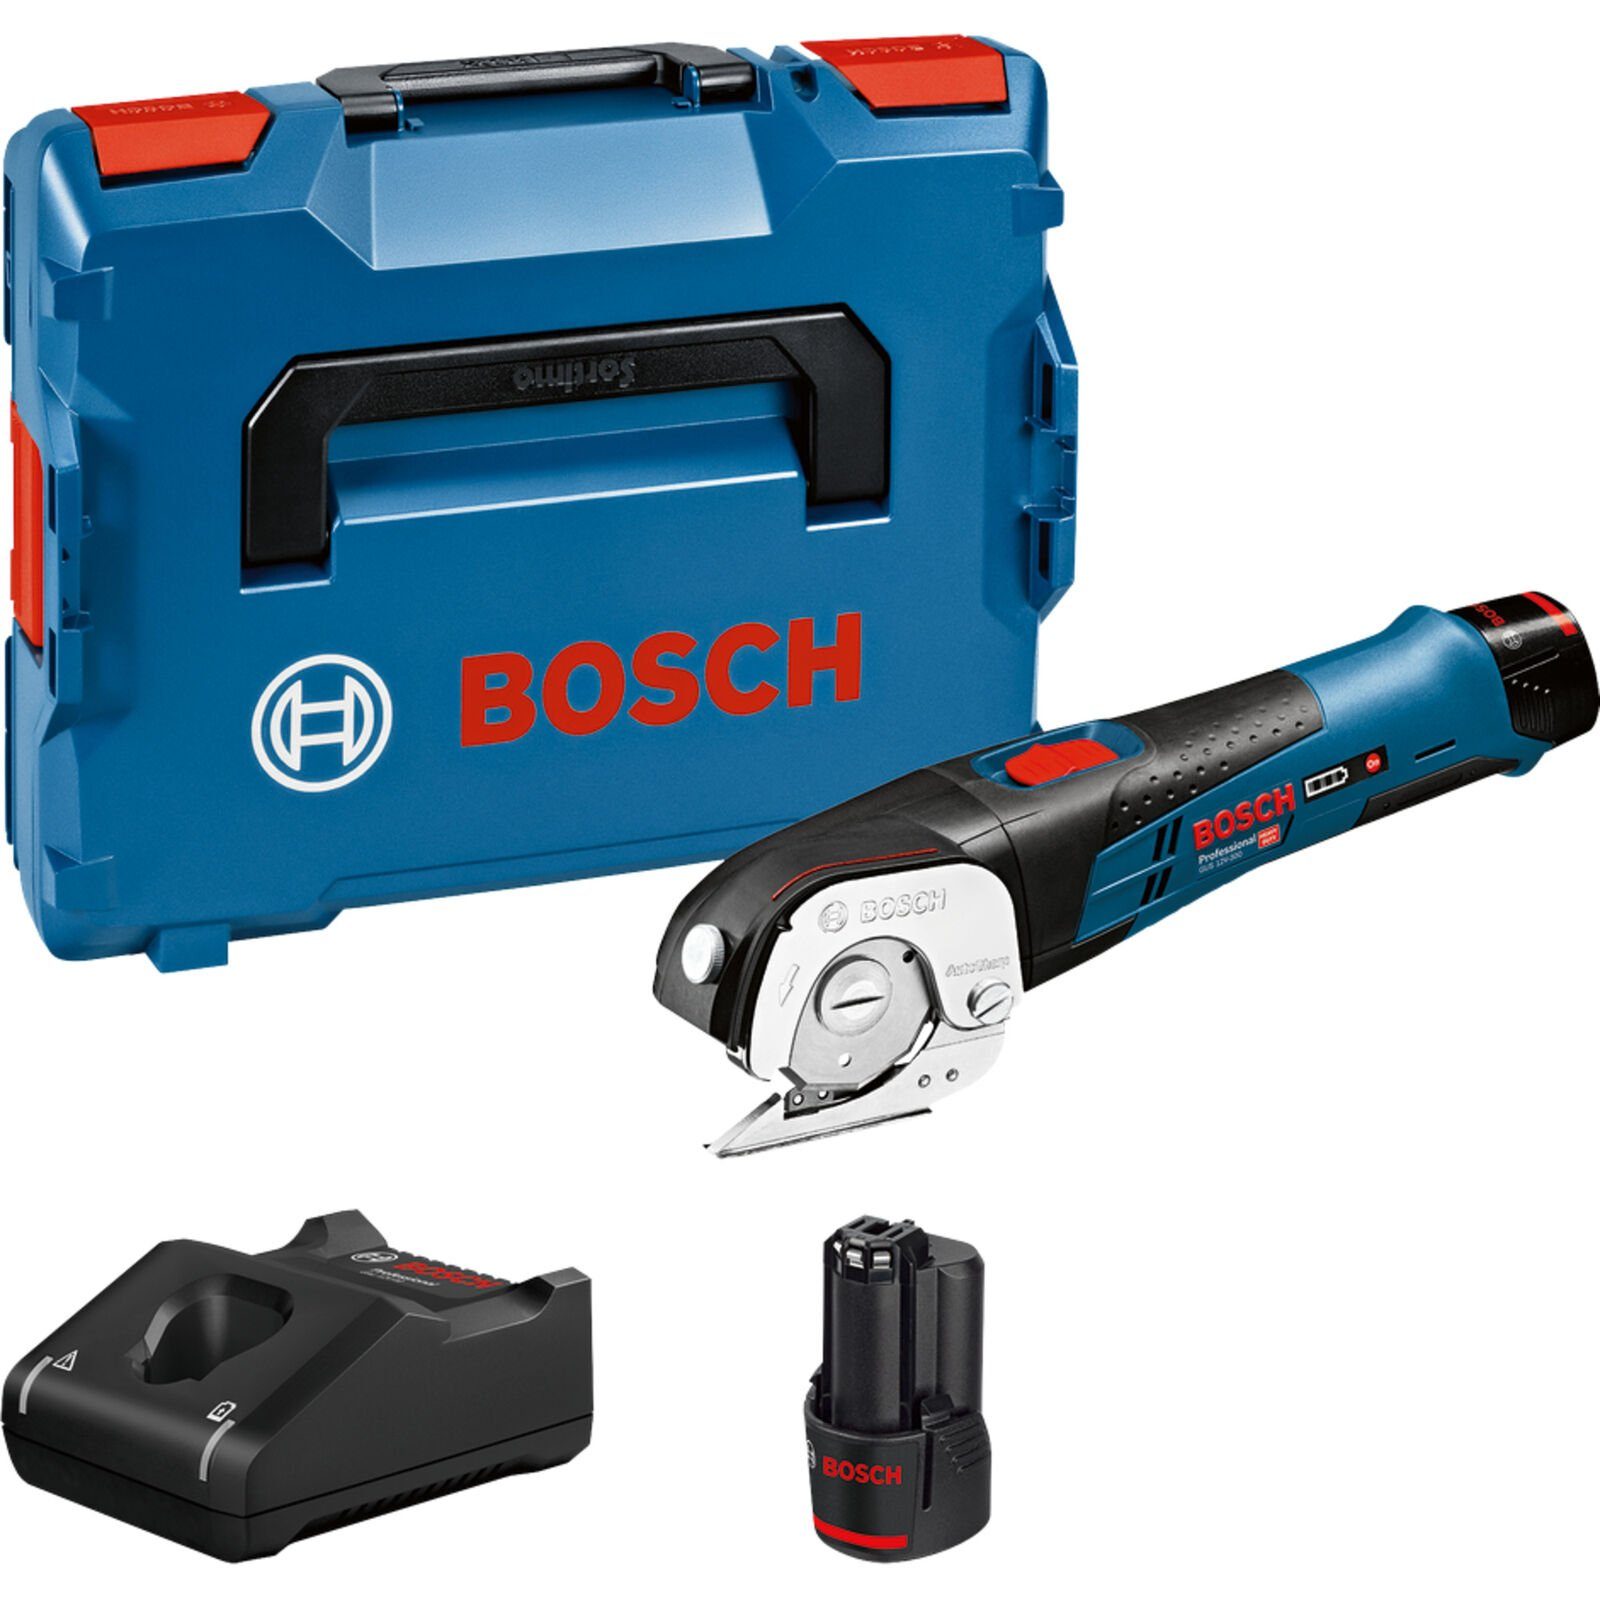 Bosch Professional BOSCH Akku-Universalschere Professional GUS 12V-300 Akku-Universalschere blau/schwarz